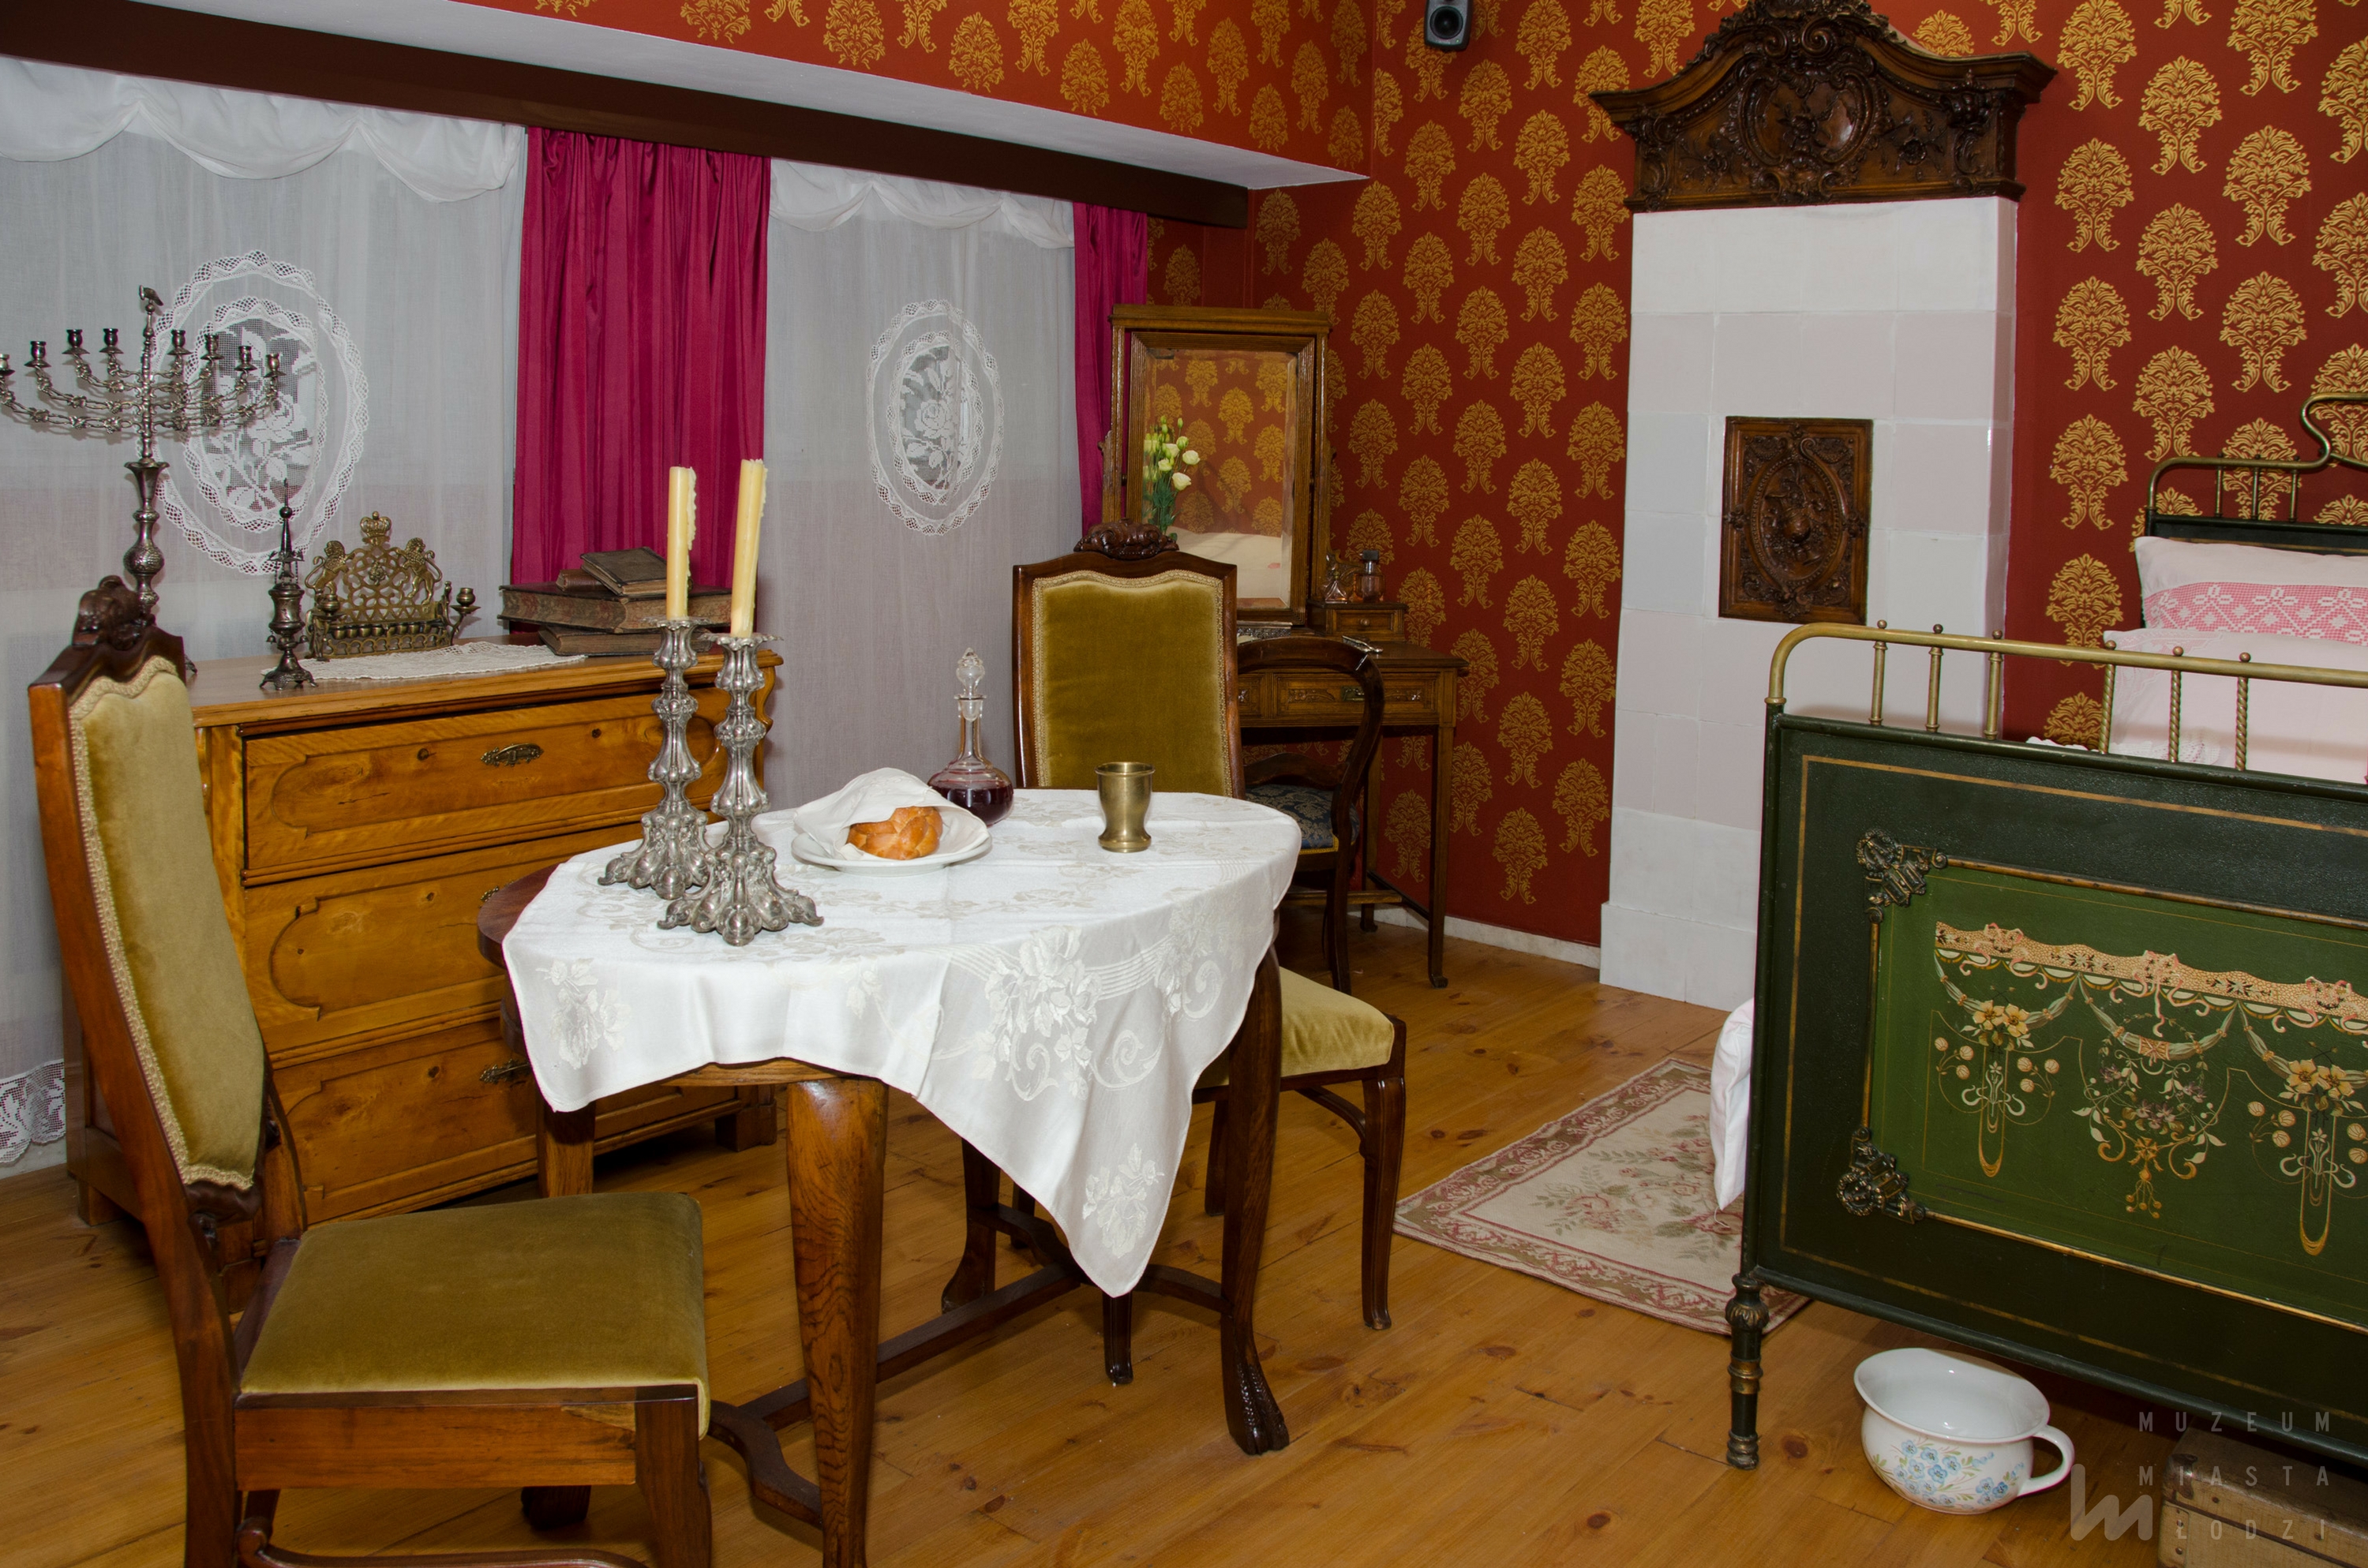 Widok na część wystawy historycznej o mieście - mieszkanie rodziny żydowskiej.